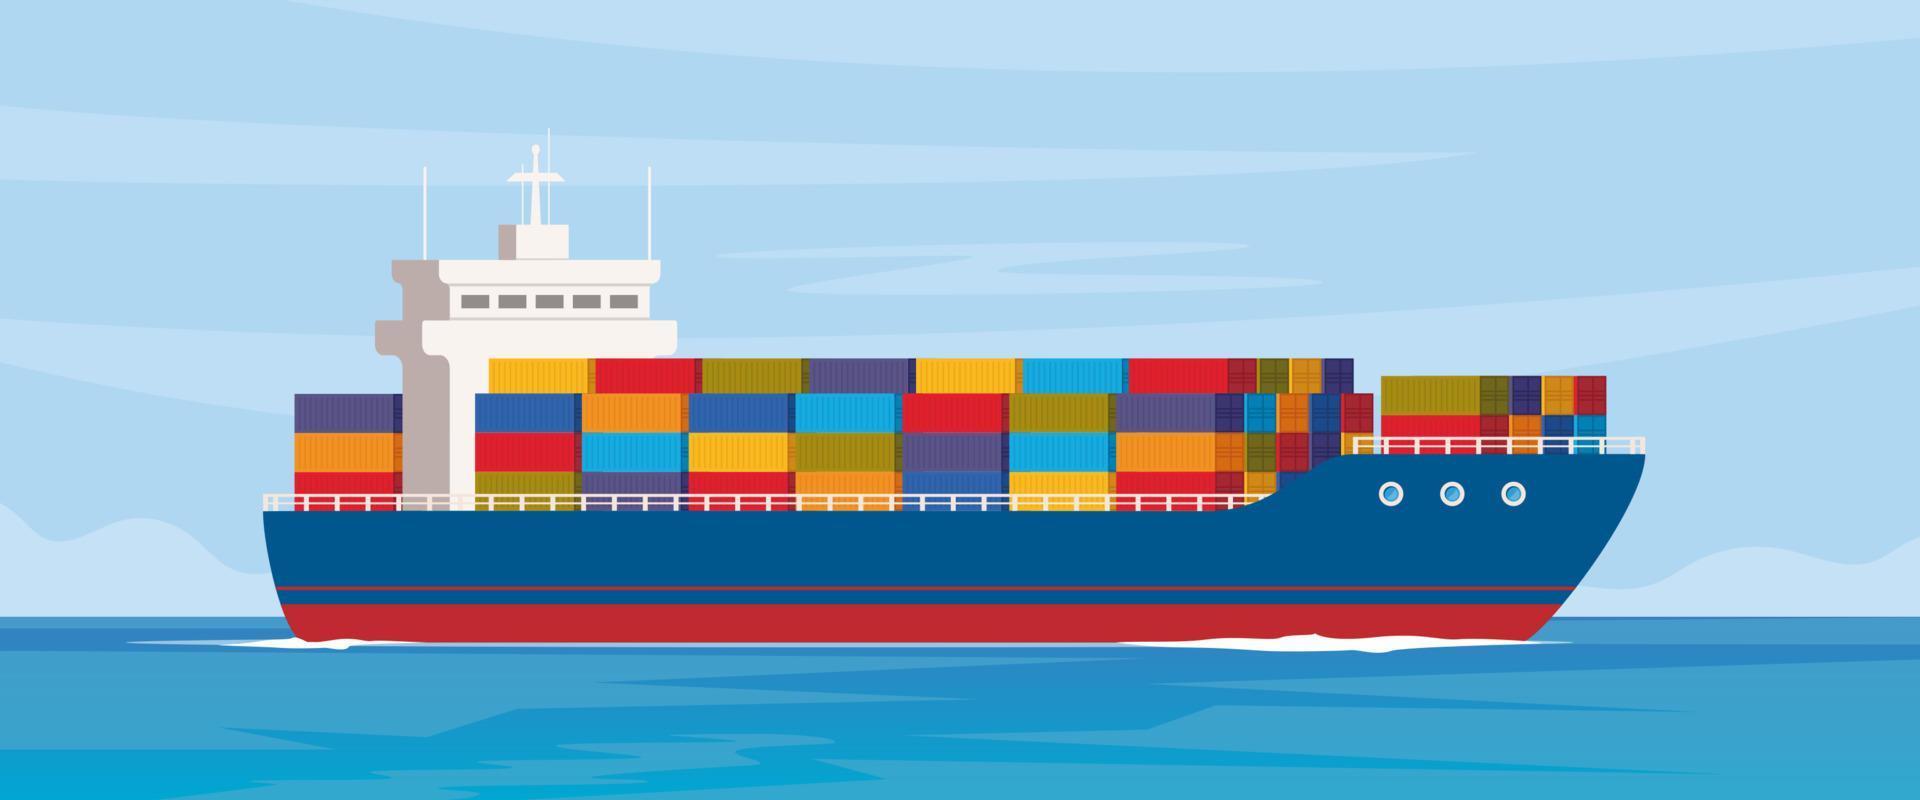 lading schip met containers in de oceaan. levering, vervoer, Verzending vracht vervoer. logistiek concept vector illustratie.